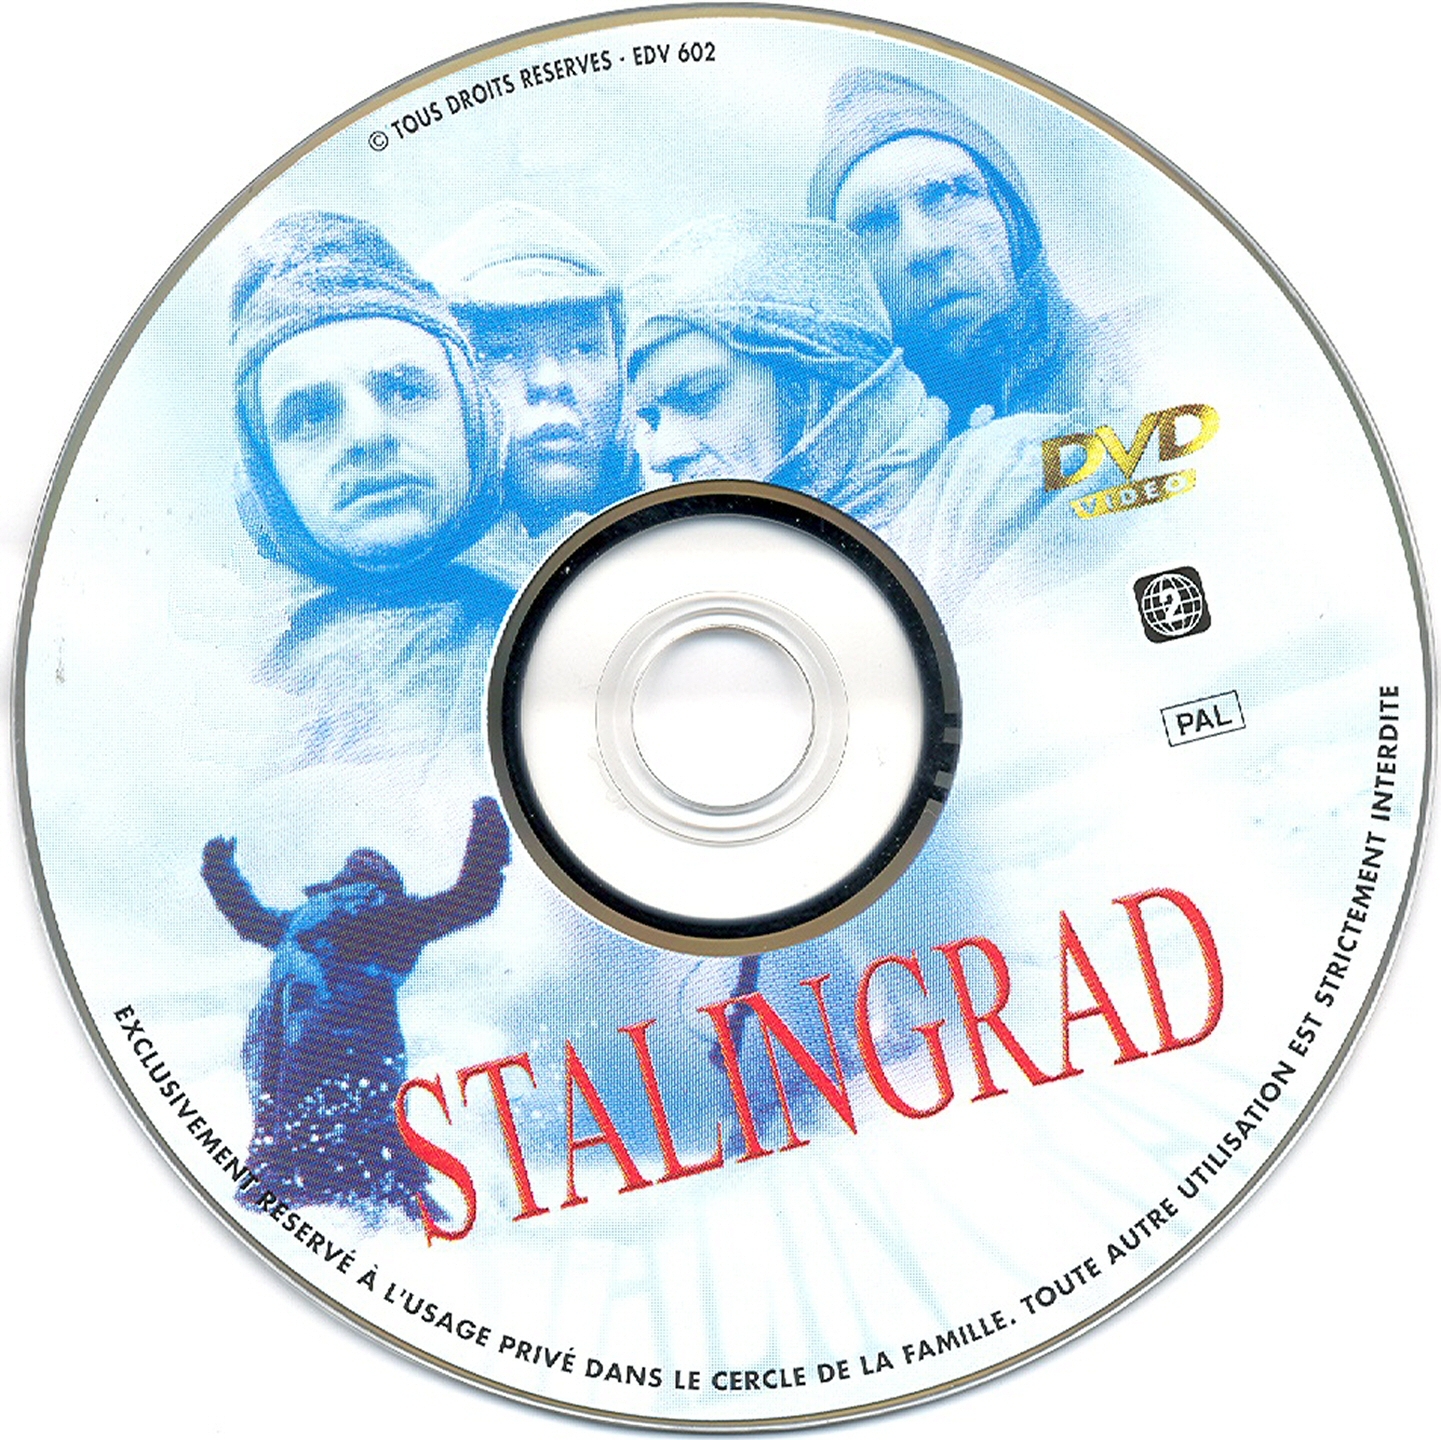 Stalingrad (un enfer de feu et de sang)